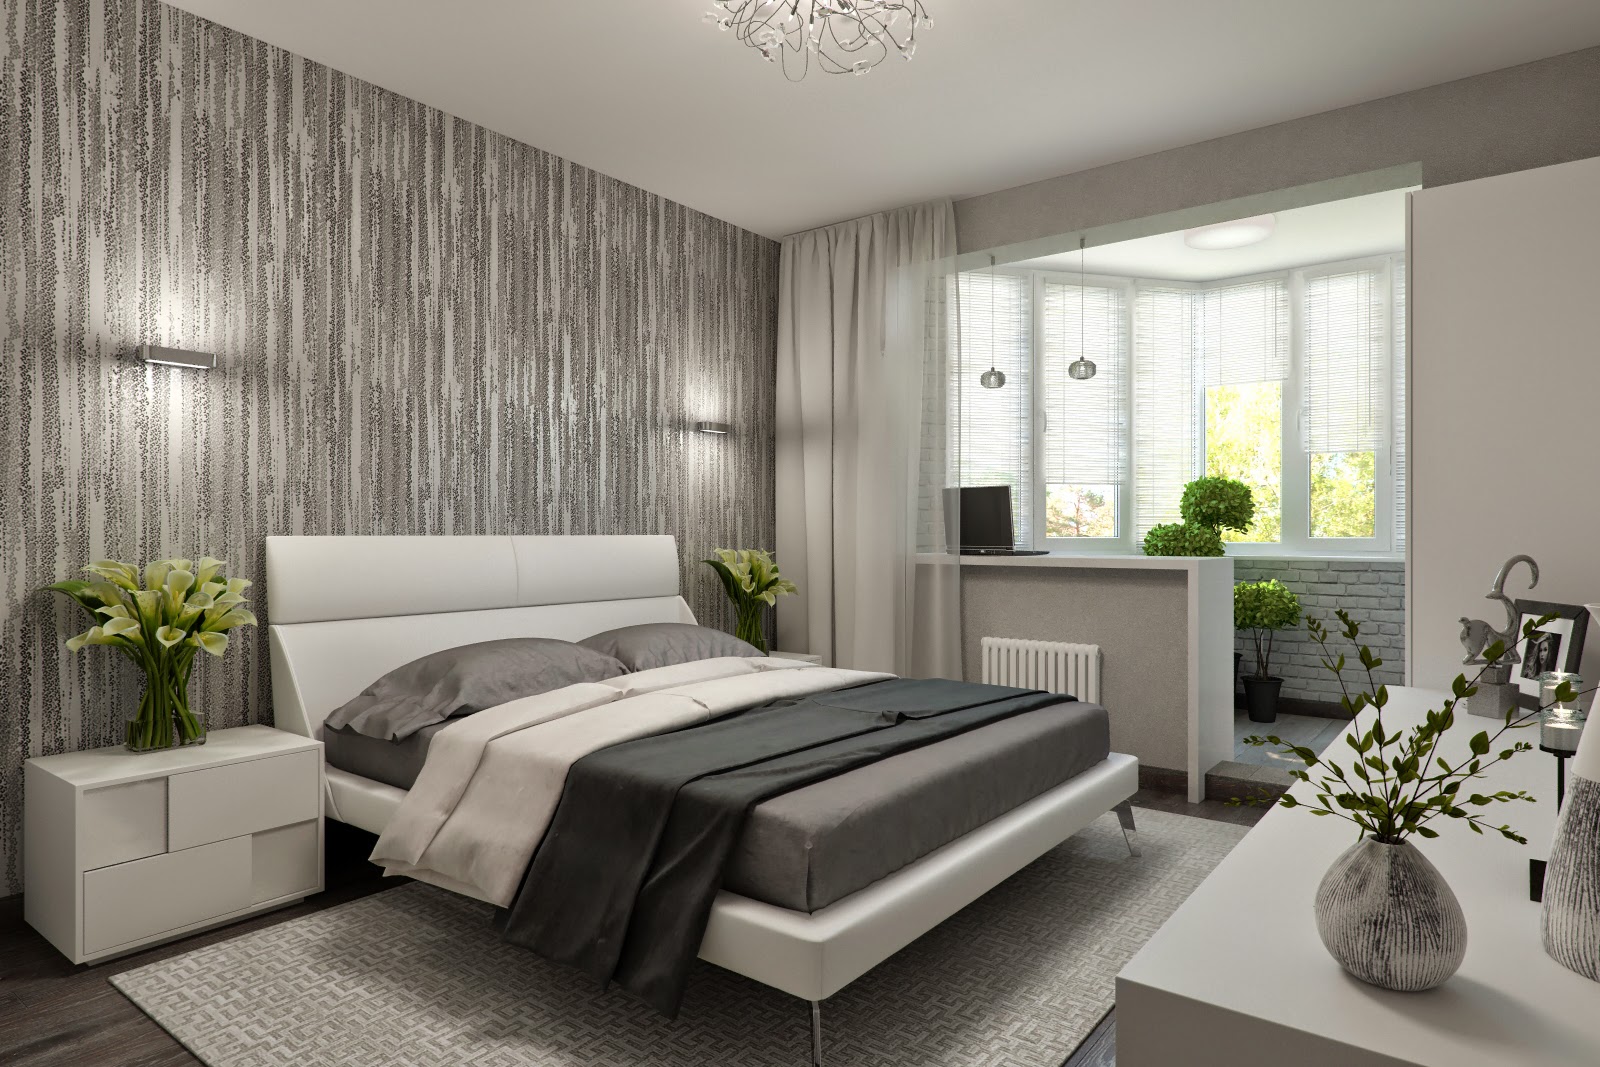 Спальня с балконом: дизайн с особенностями
 Дизайн Спальни С Угловой Гардеробной